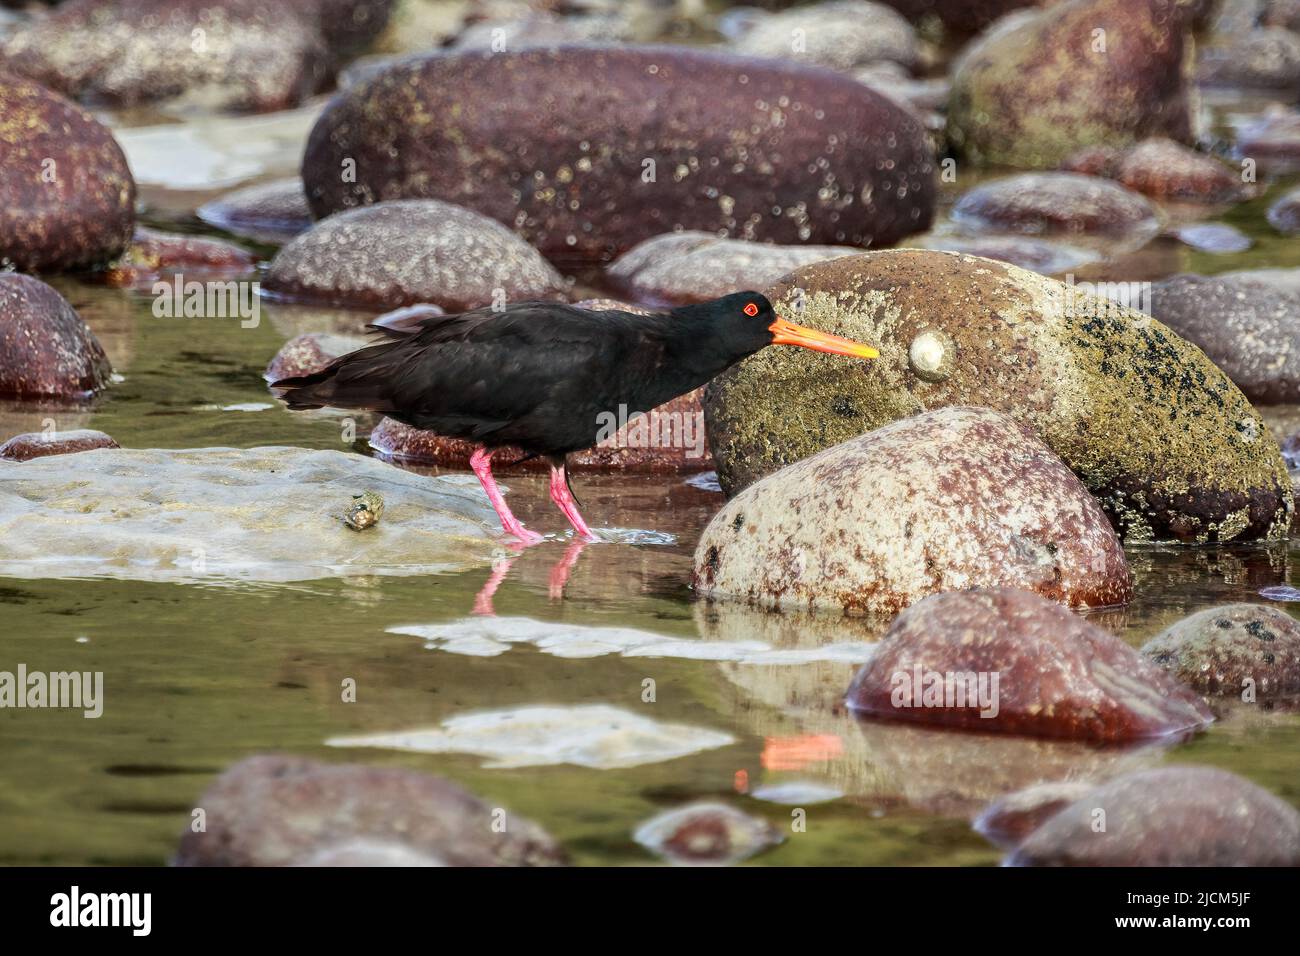 Un oystercatcher variable, un ave playera encontrada en Nueva Zelanda, picoteando una limpet de una roca Foto de stock